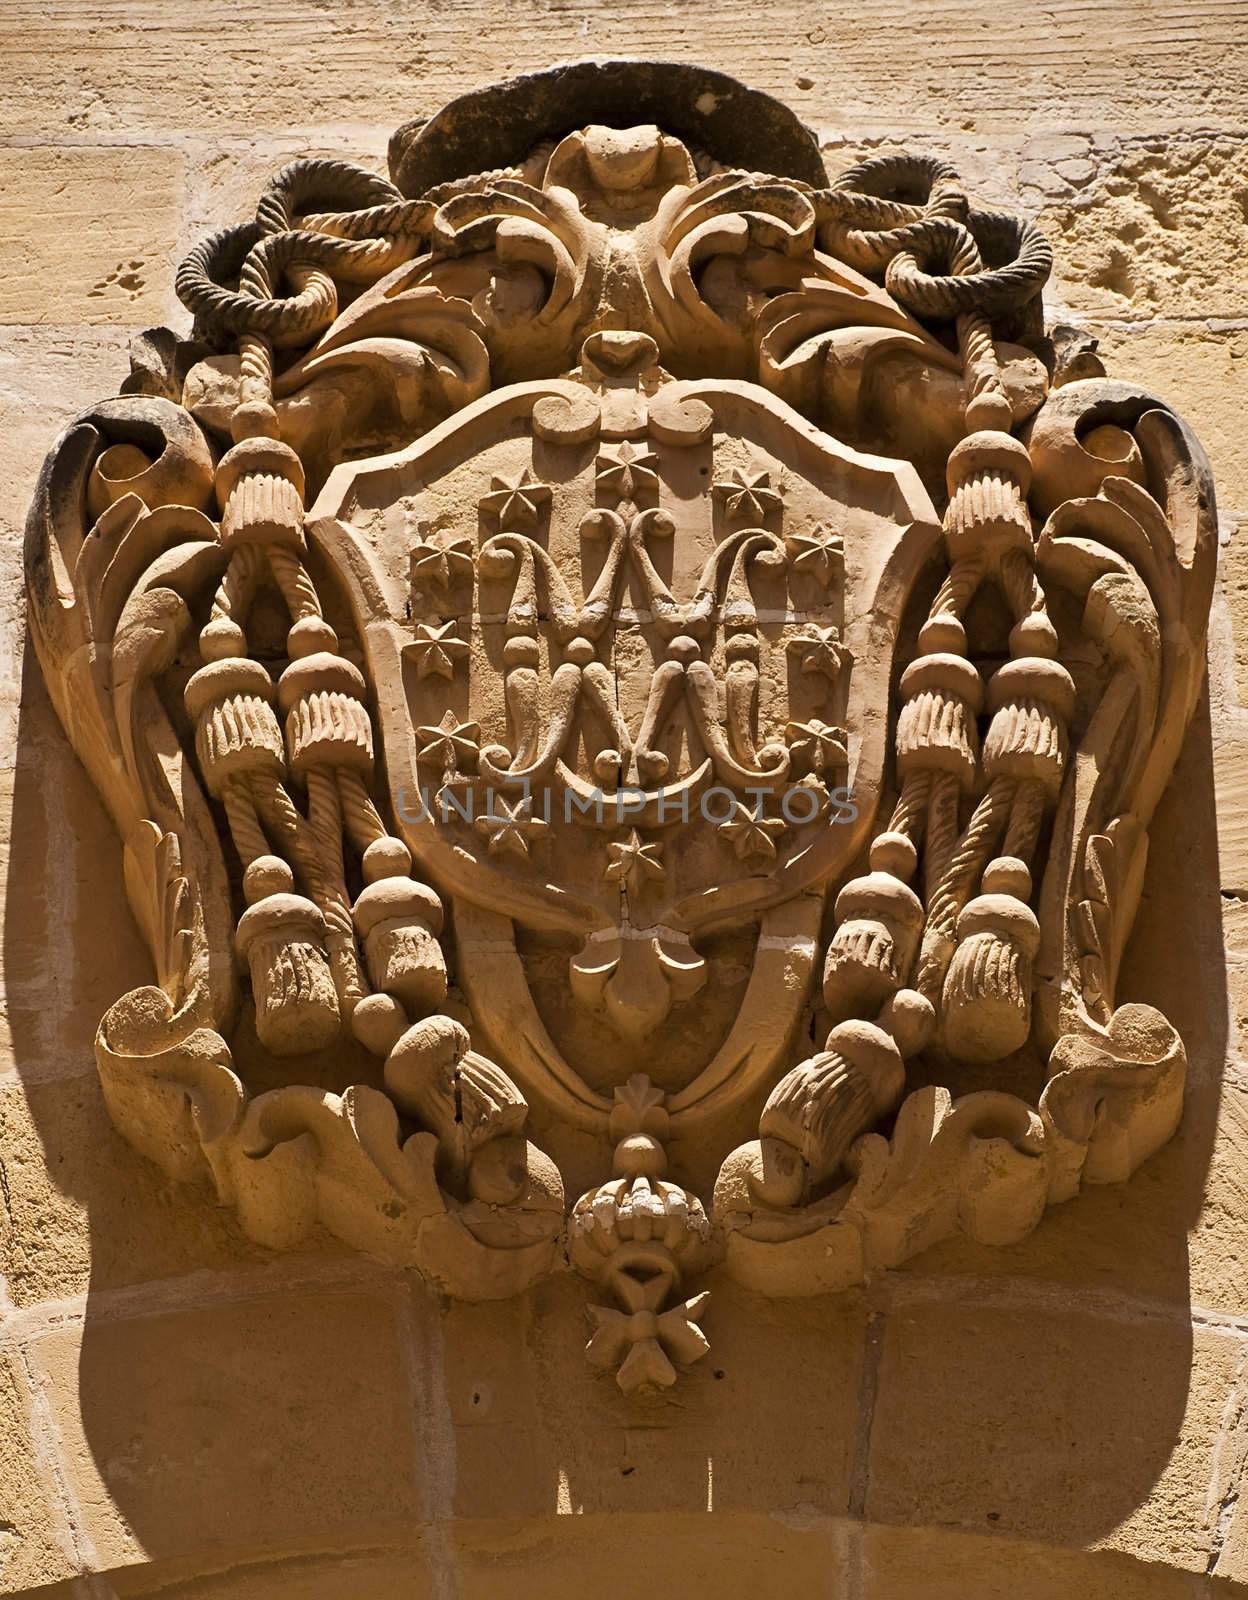 Coat of arms carved in limestone in the old Citadel in Gozo Malta